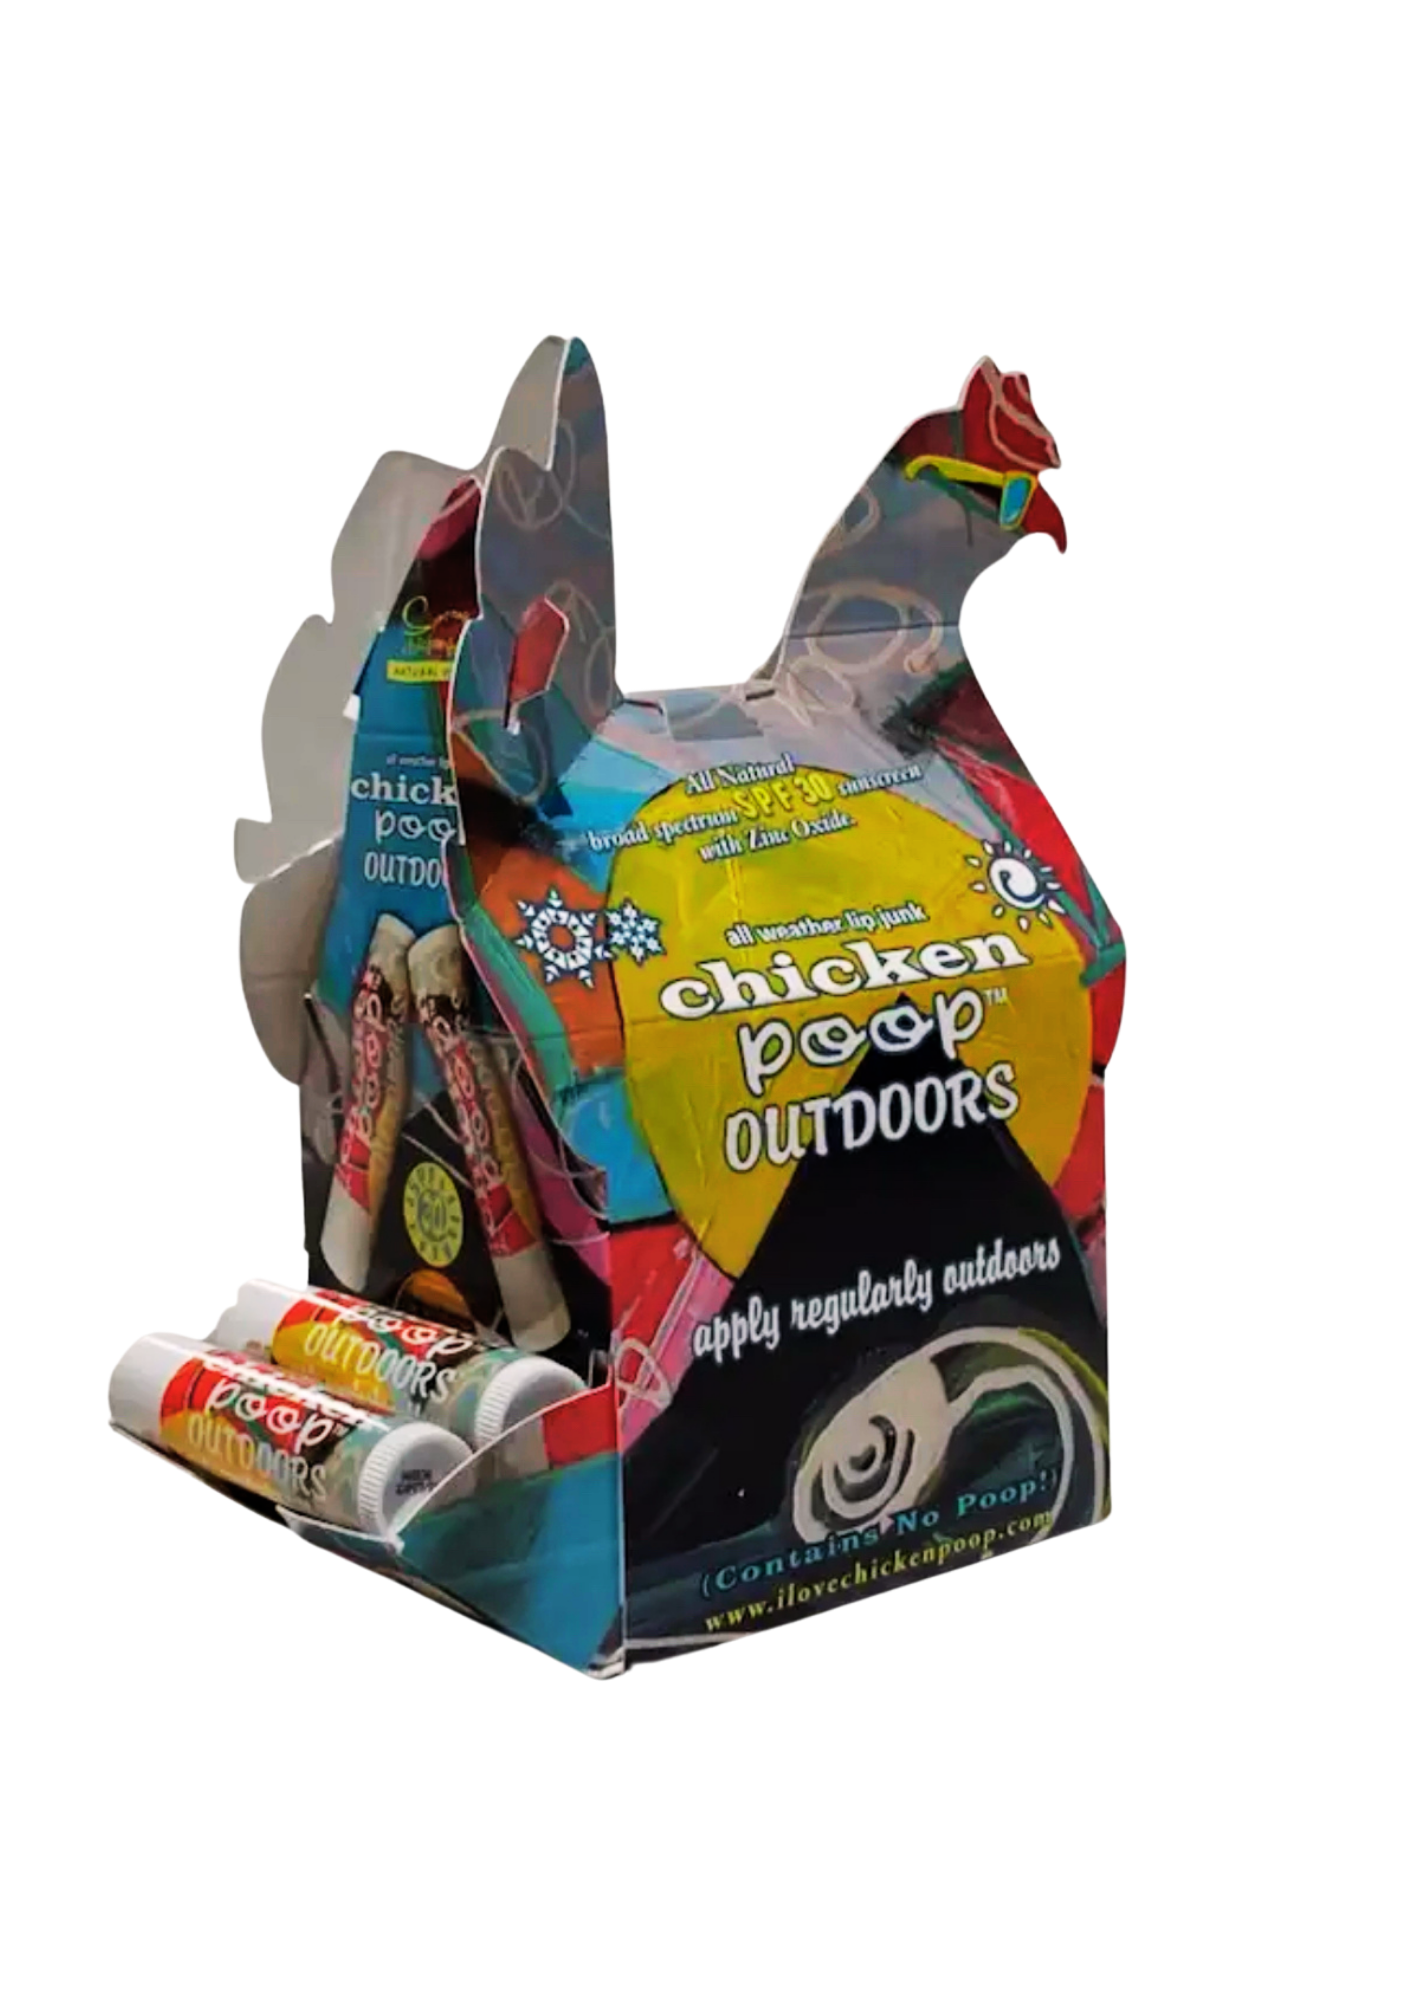 Chicken Poop - Outdoor Chicken Poop with SPF 30